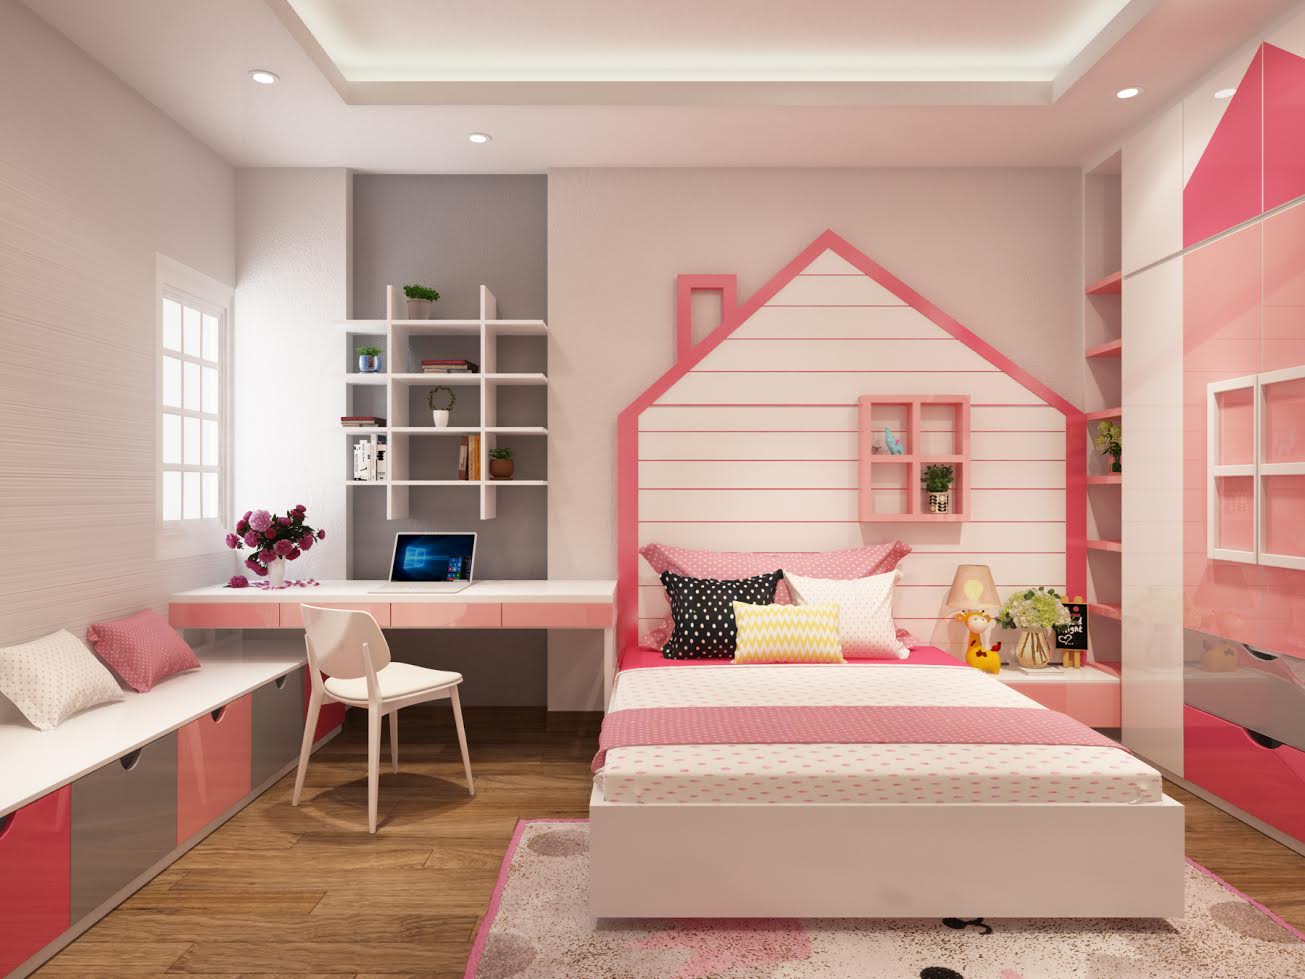 Trang trí phòng ngủ kiểu Hàn Quốc cho bé gái với gam màu trắng chủ đạo, nổi bật trên đó là những chi tiết đường viền màu hồng tuyệt đẹp